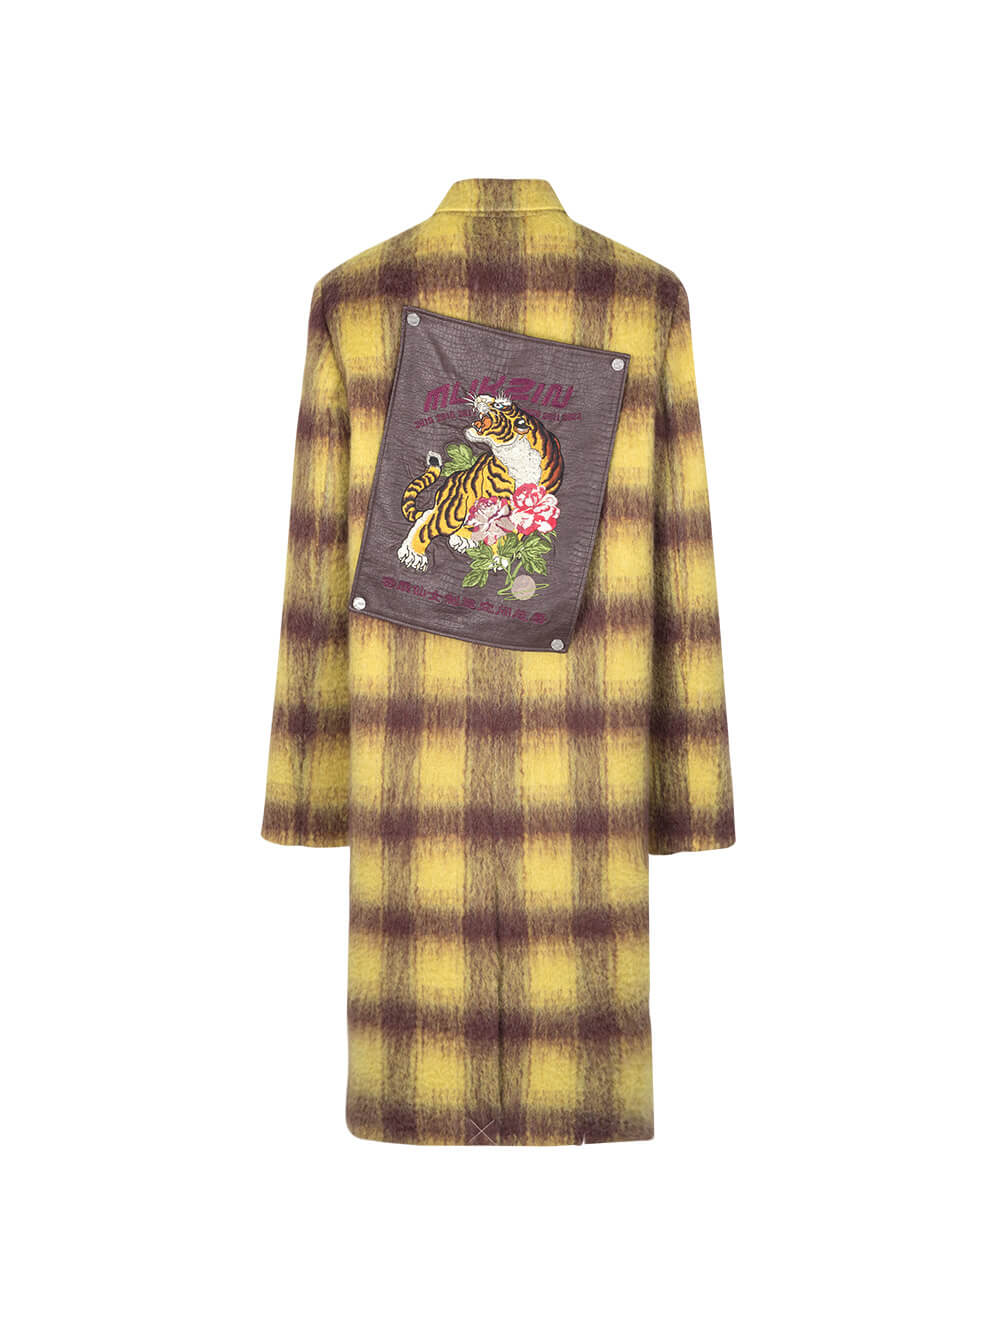 MUKZIN Long Yellow Brown Woolen Coat